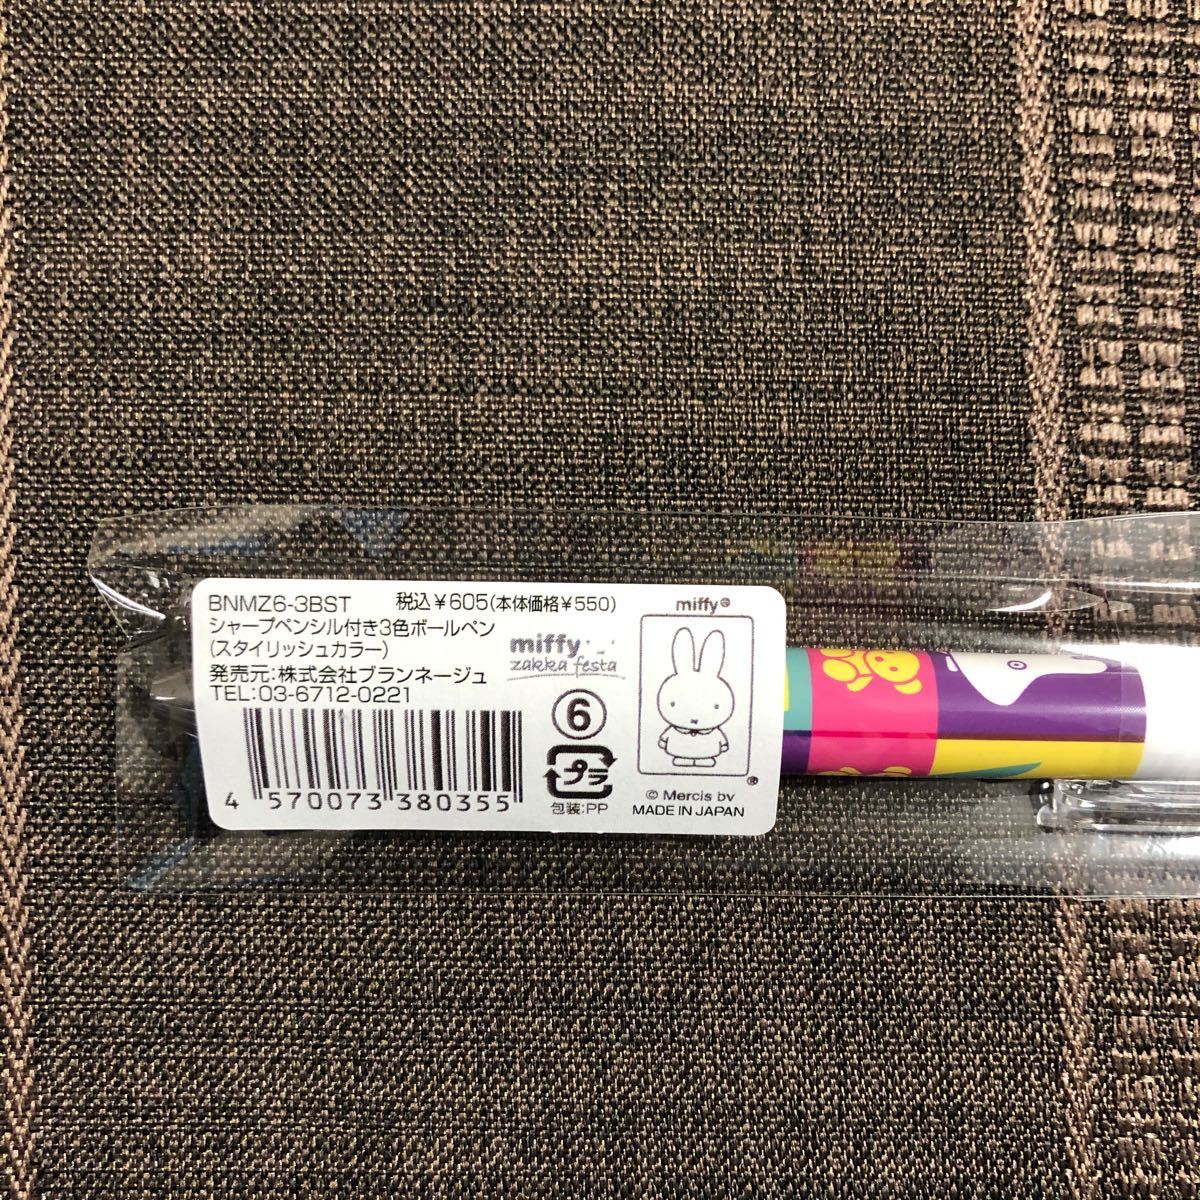 ミッフィー zakkaフェスタ限定 ミッフィー シャープペン付き3色ボールペン